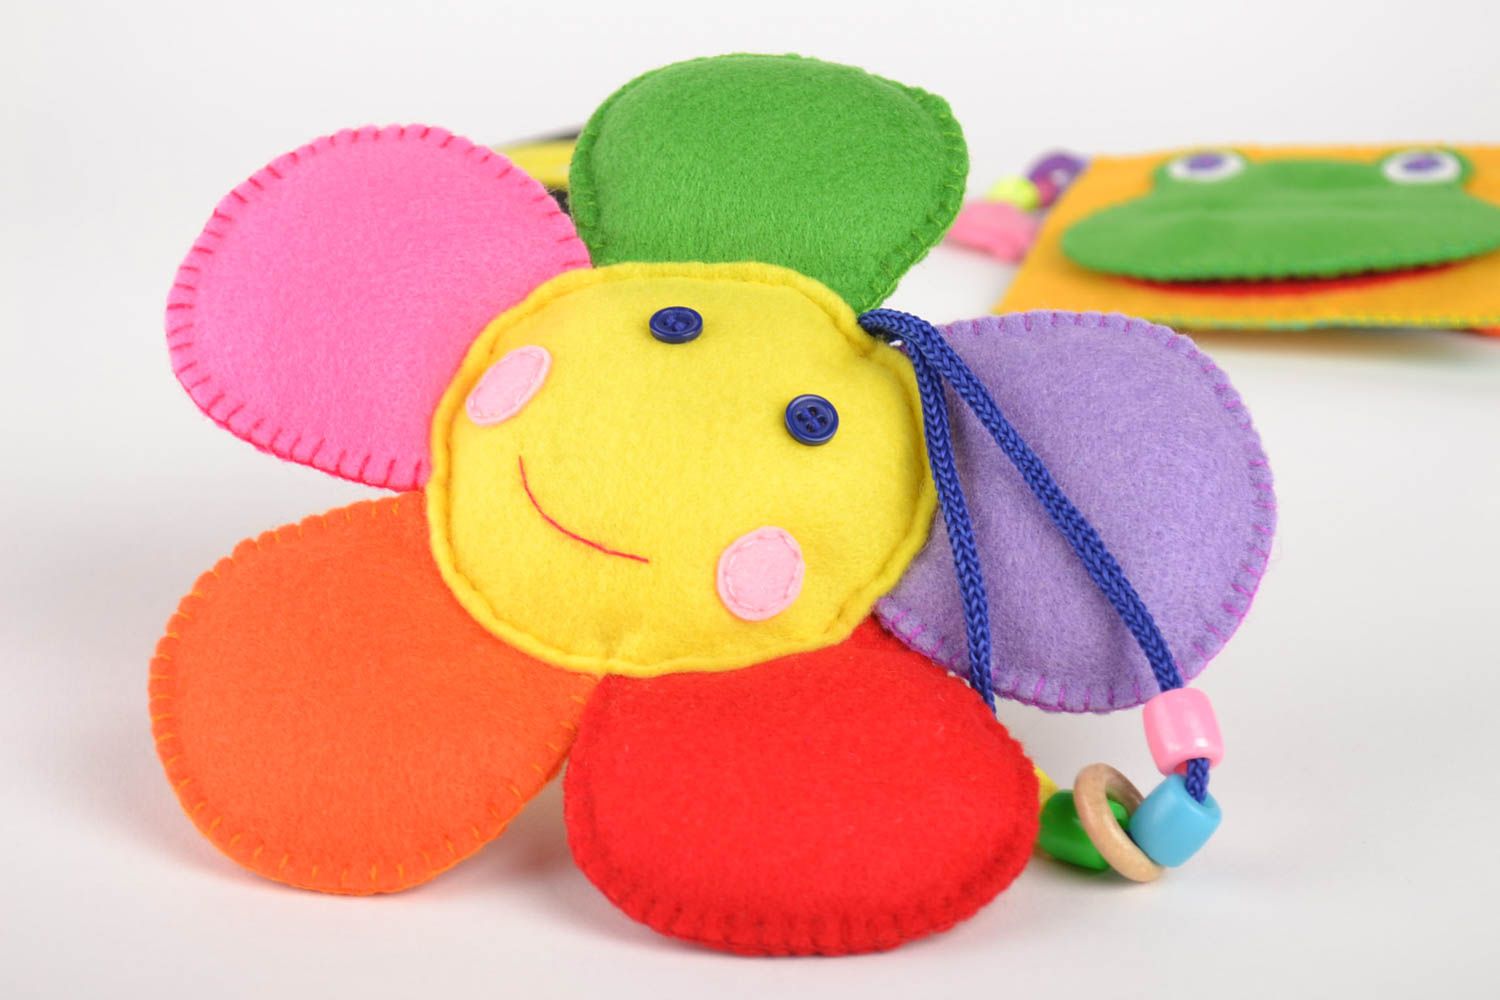 Handmade kreatives Spielzeug Kinder Geschenk gutes Spielzeug schöne Dekoideen foto 1